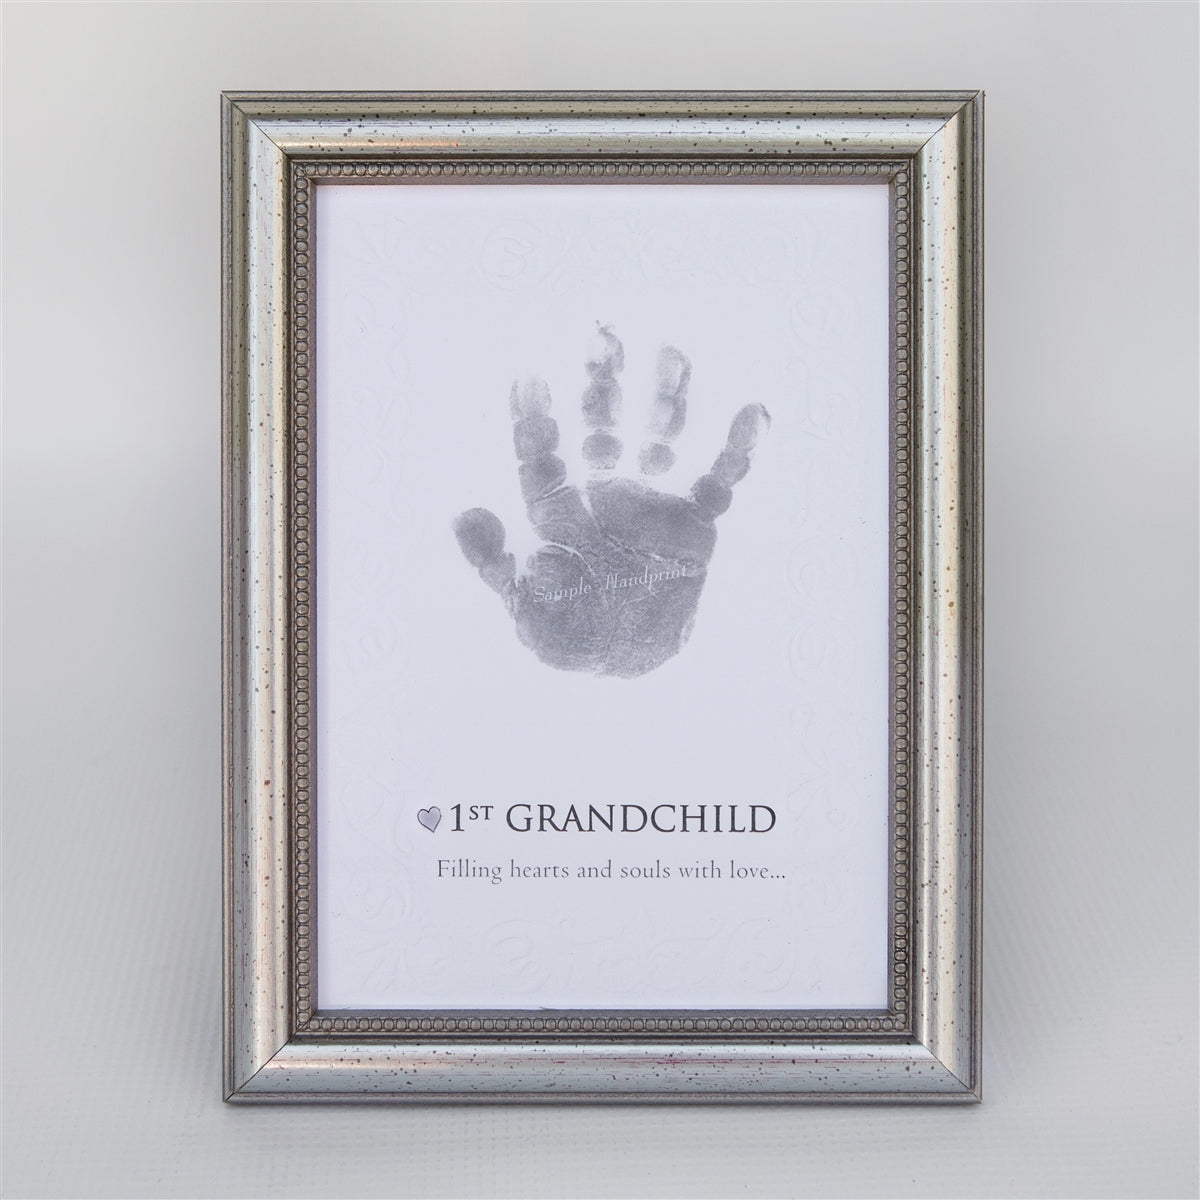 First Grandchild Frame: Handprint Keepsake 5x7